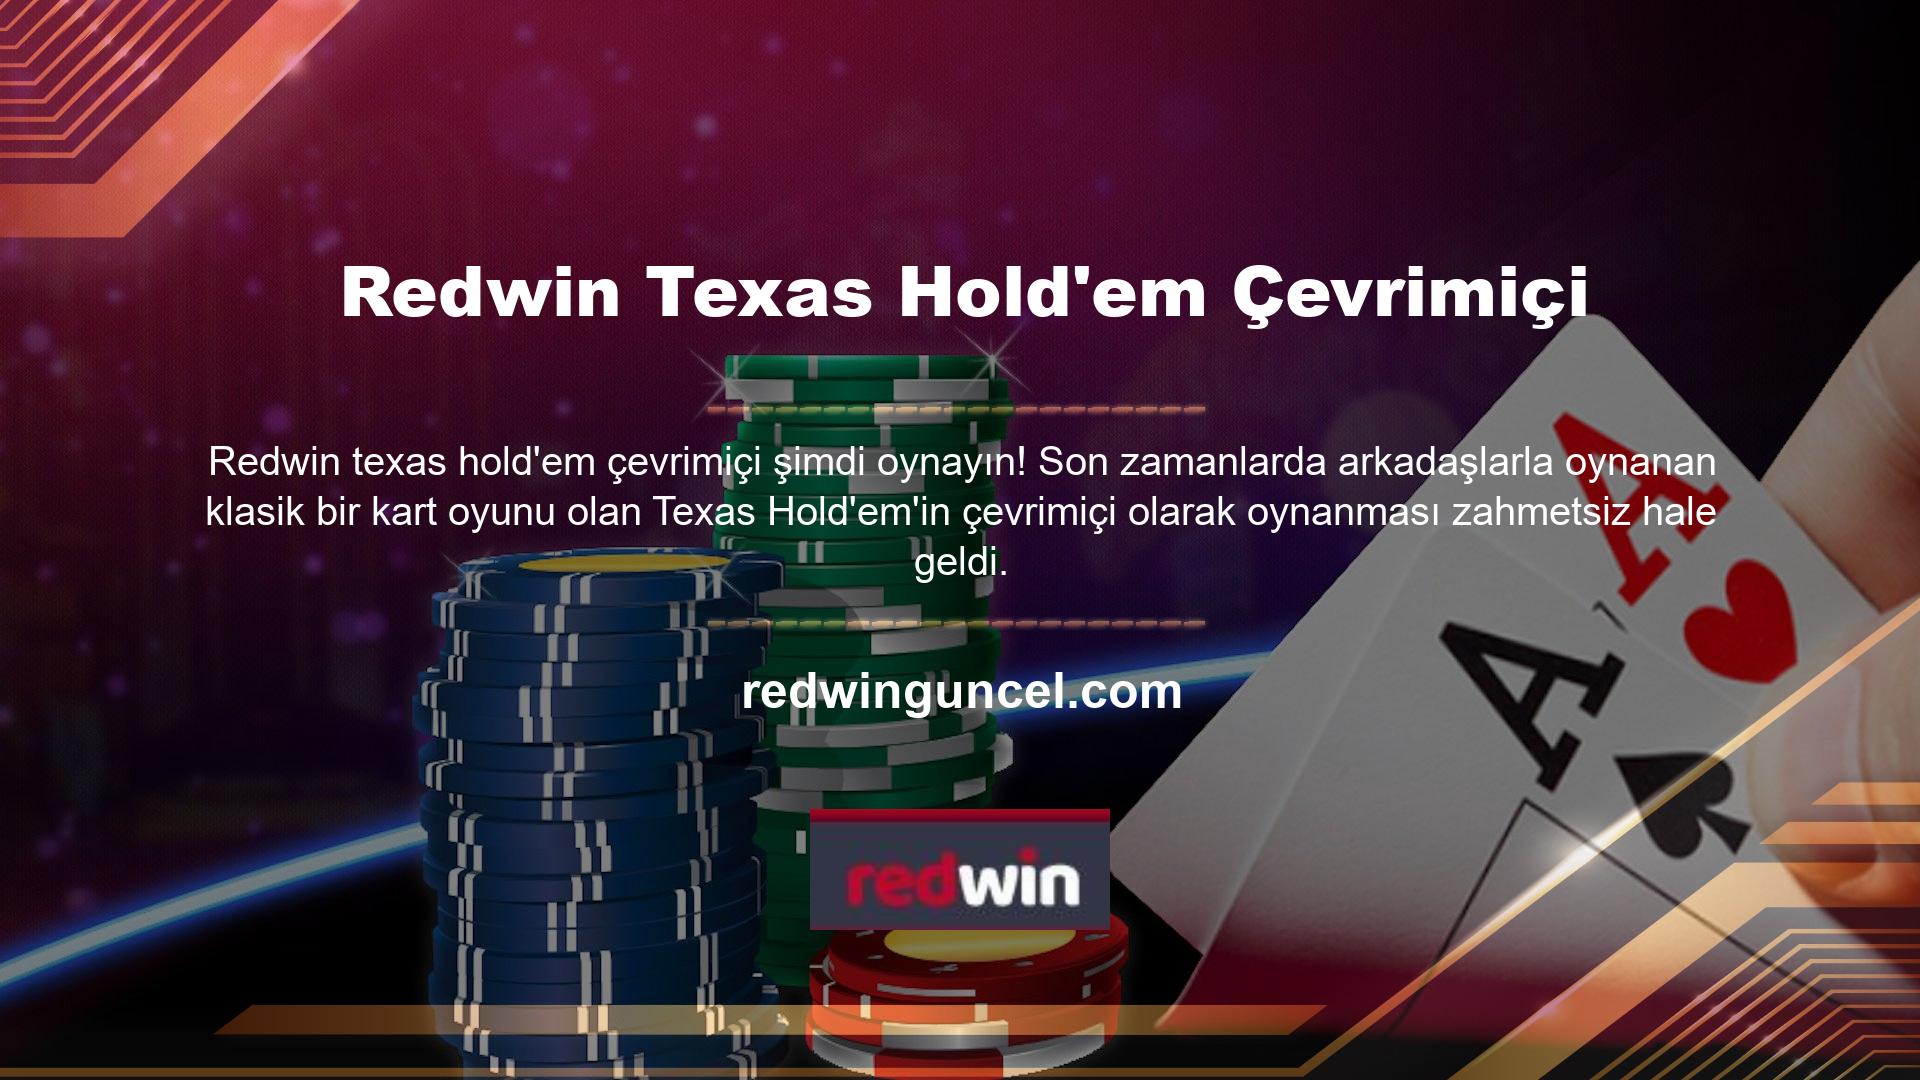 Çevrimiçi bahis oynamanın getirdiği heyecan ve heyecan arayışından heyecan duyanlar Texas Hold'em'e katılabilir